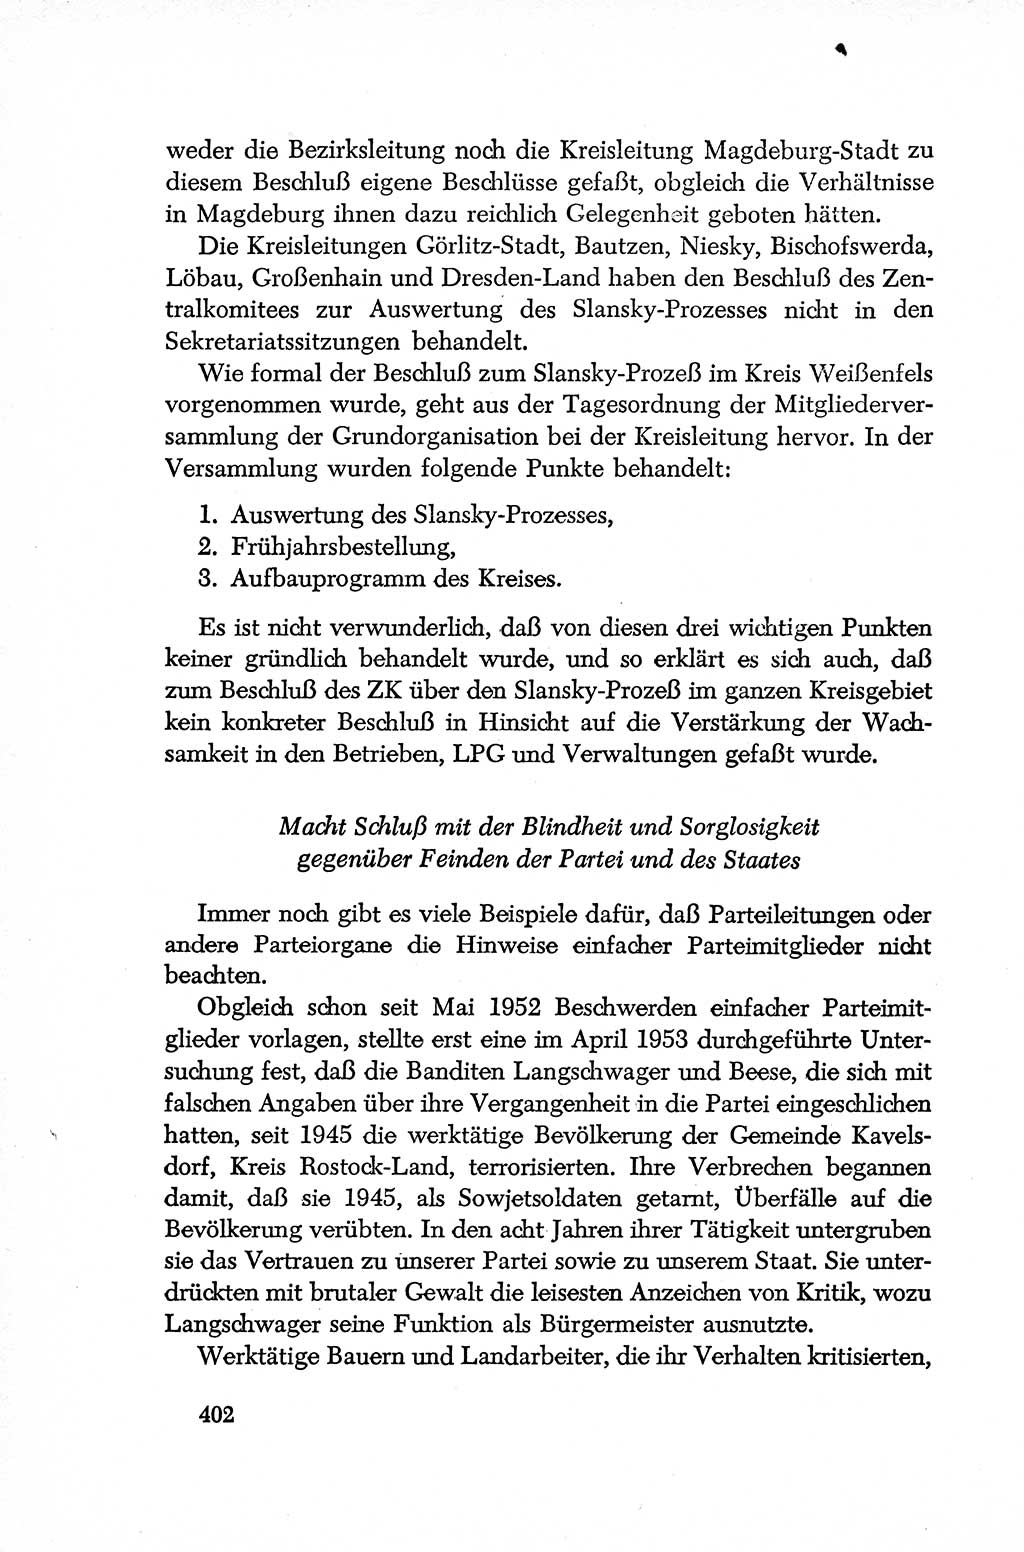 Dokumente der Sozialistischen Einheitspartei Deutschlands (SED) [Deutsche Demokratische Republik (DDR)] 1952-1953, Seite 402 (Dok. SED DDR 1952-1953, S. 402)